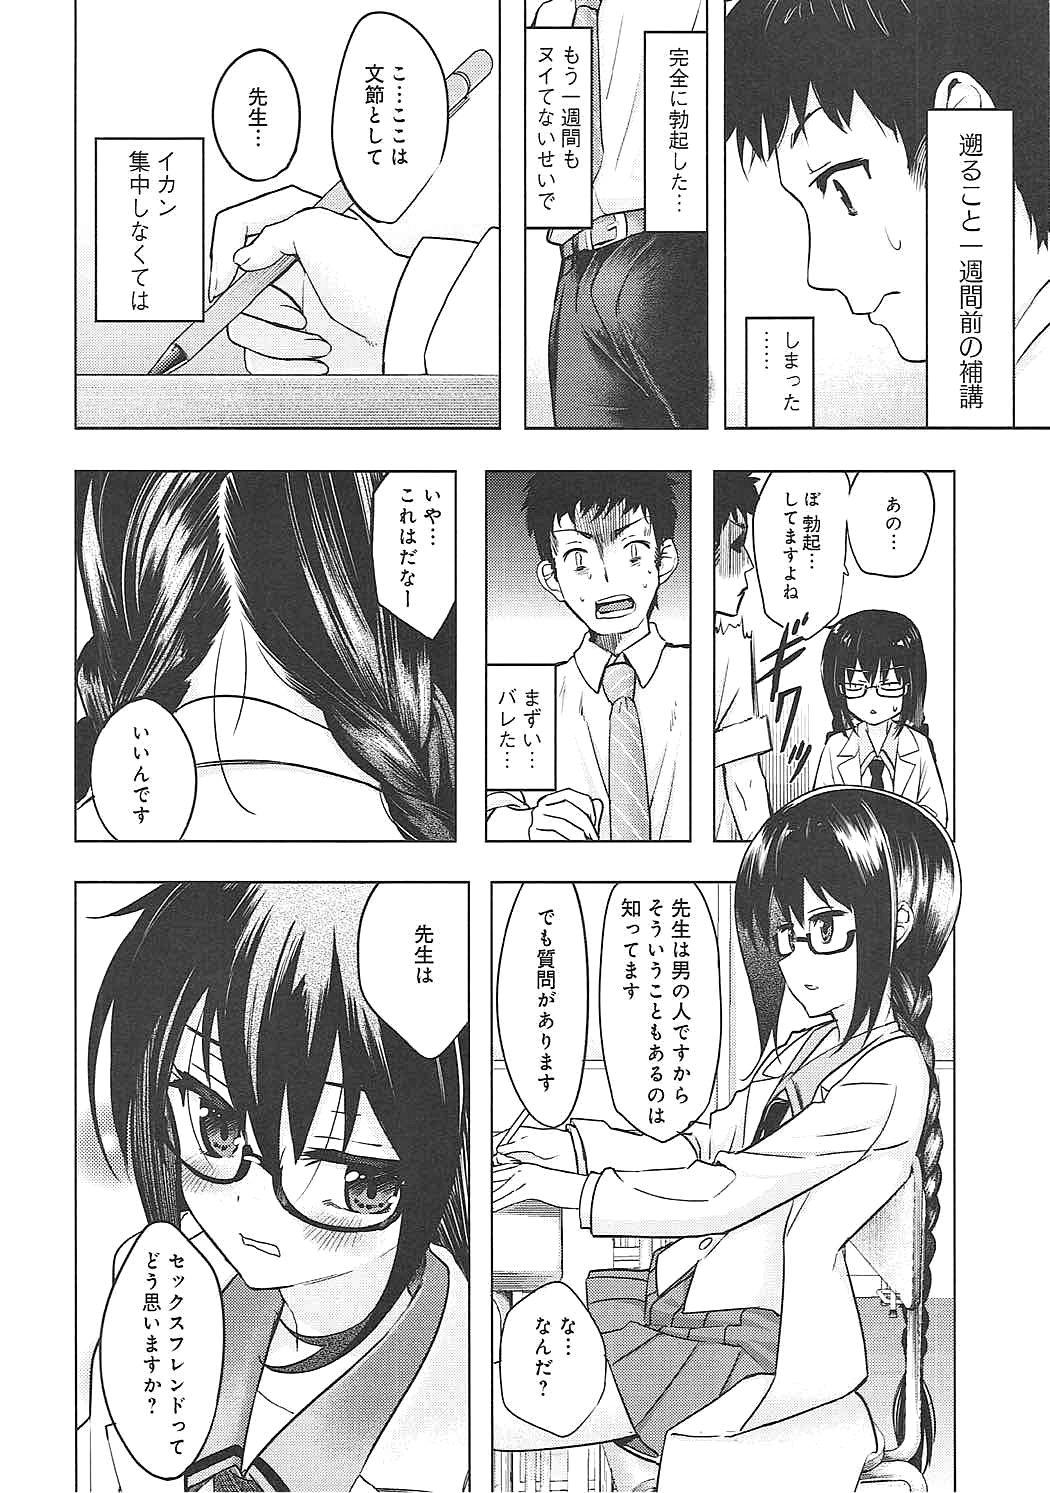 Behind Watashi wa Sensei no Shikotomo desu! - Omaera zenin mendokusai Free Blowjob - Page 5